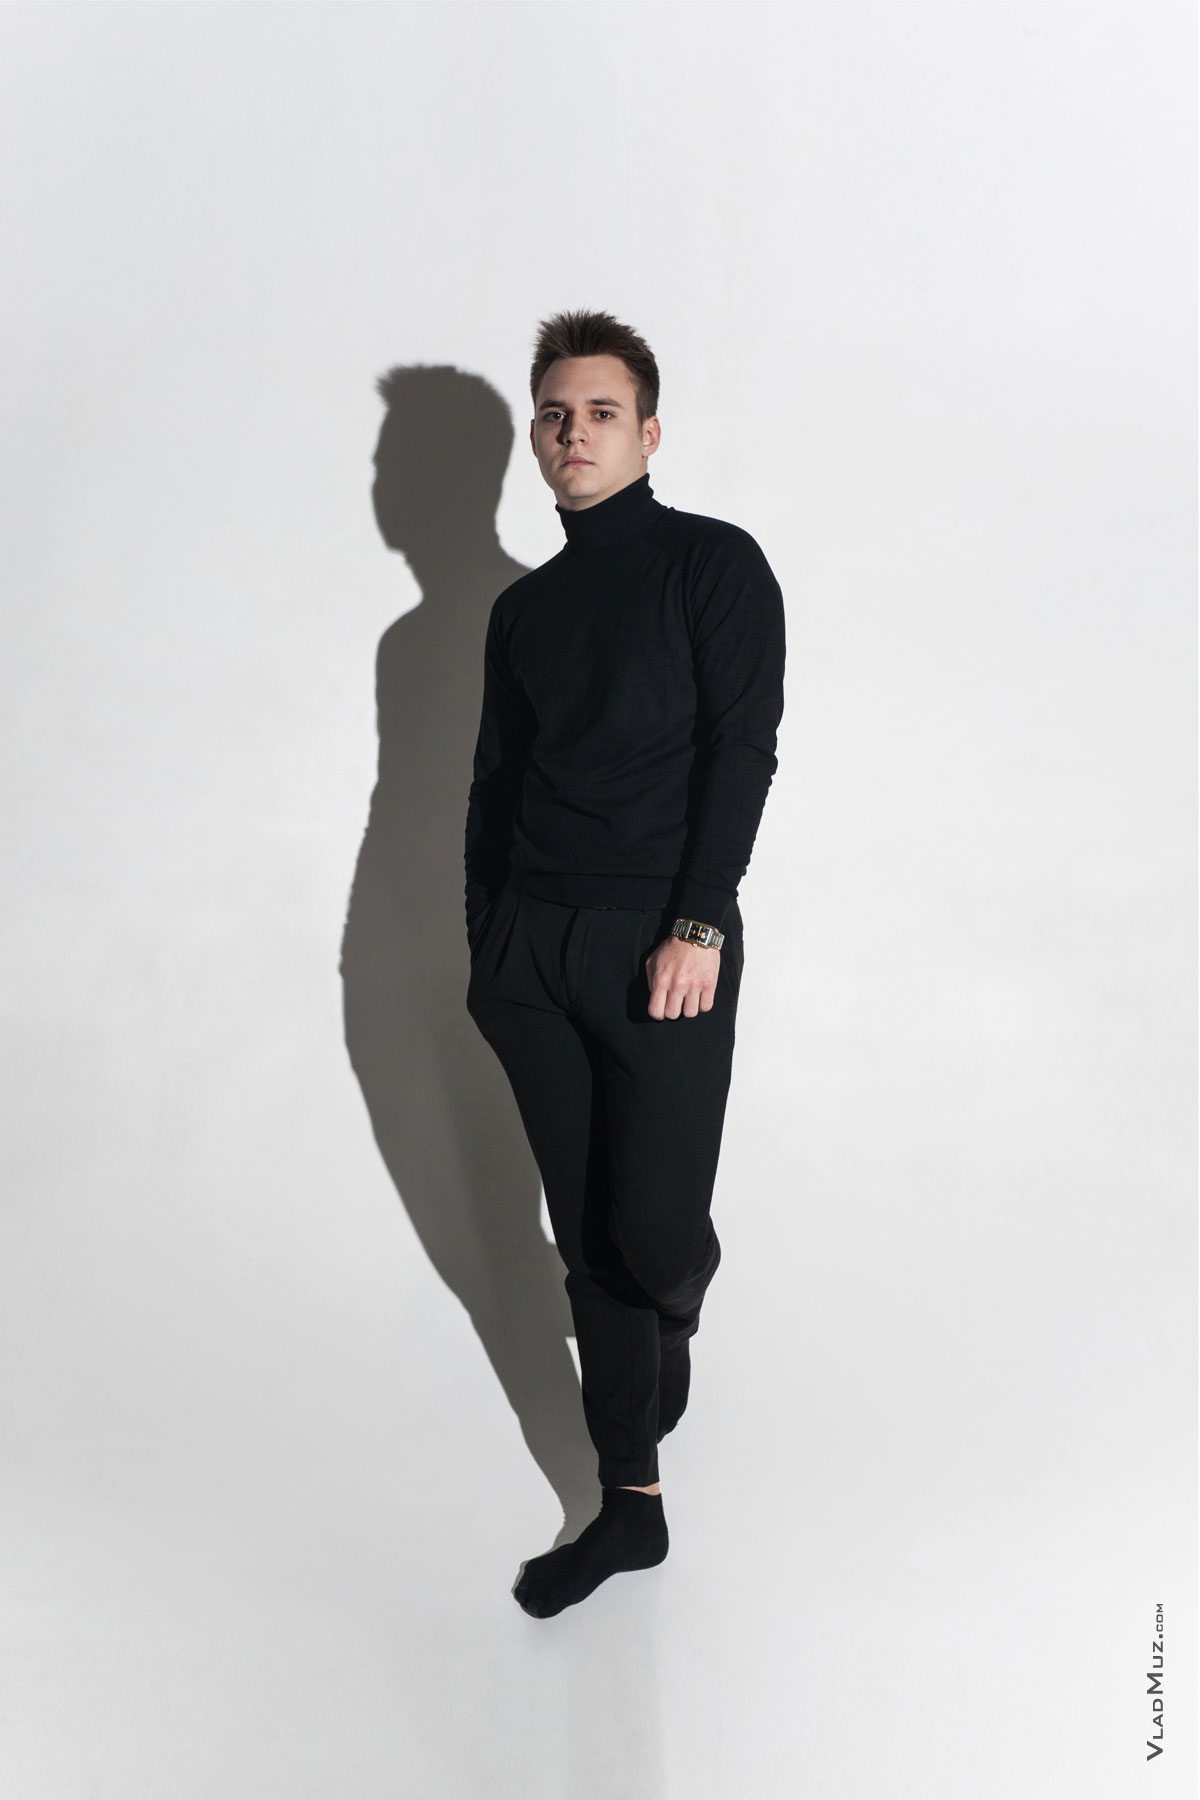 Фото мужчины-модели в студии на белой циклораме в полный рост с черной тенью на фоне